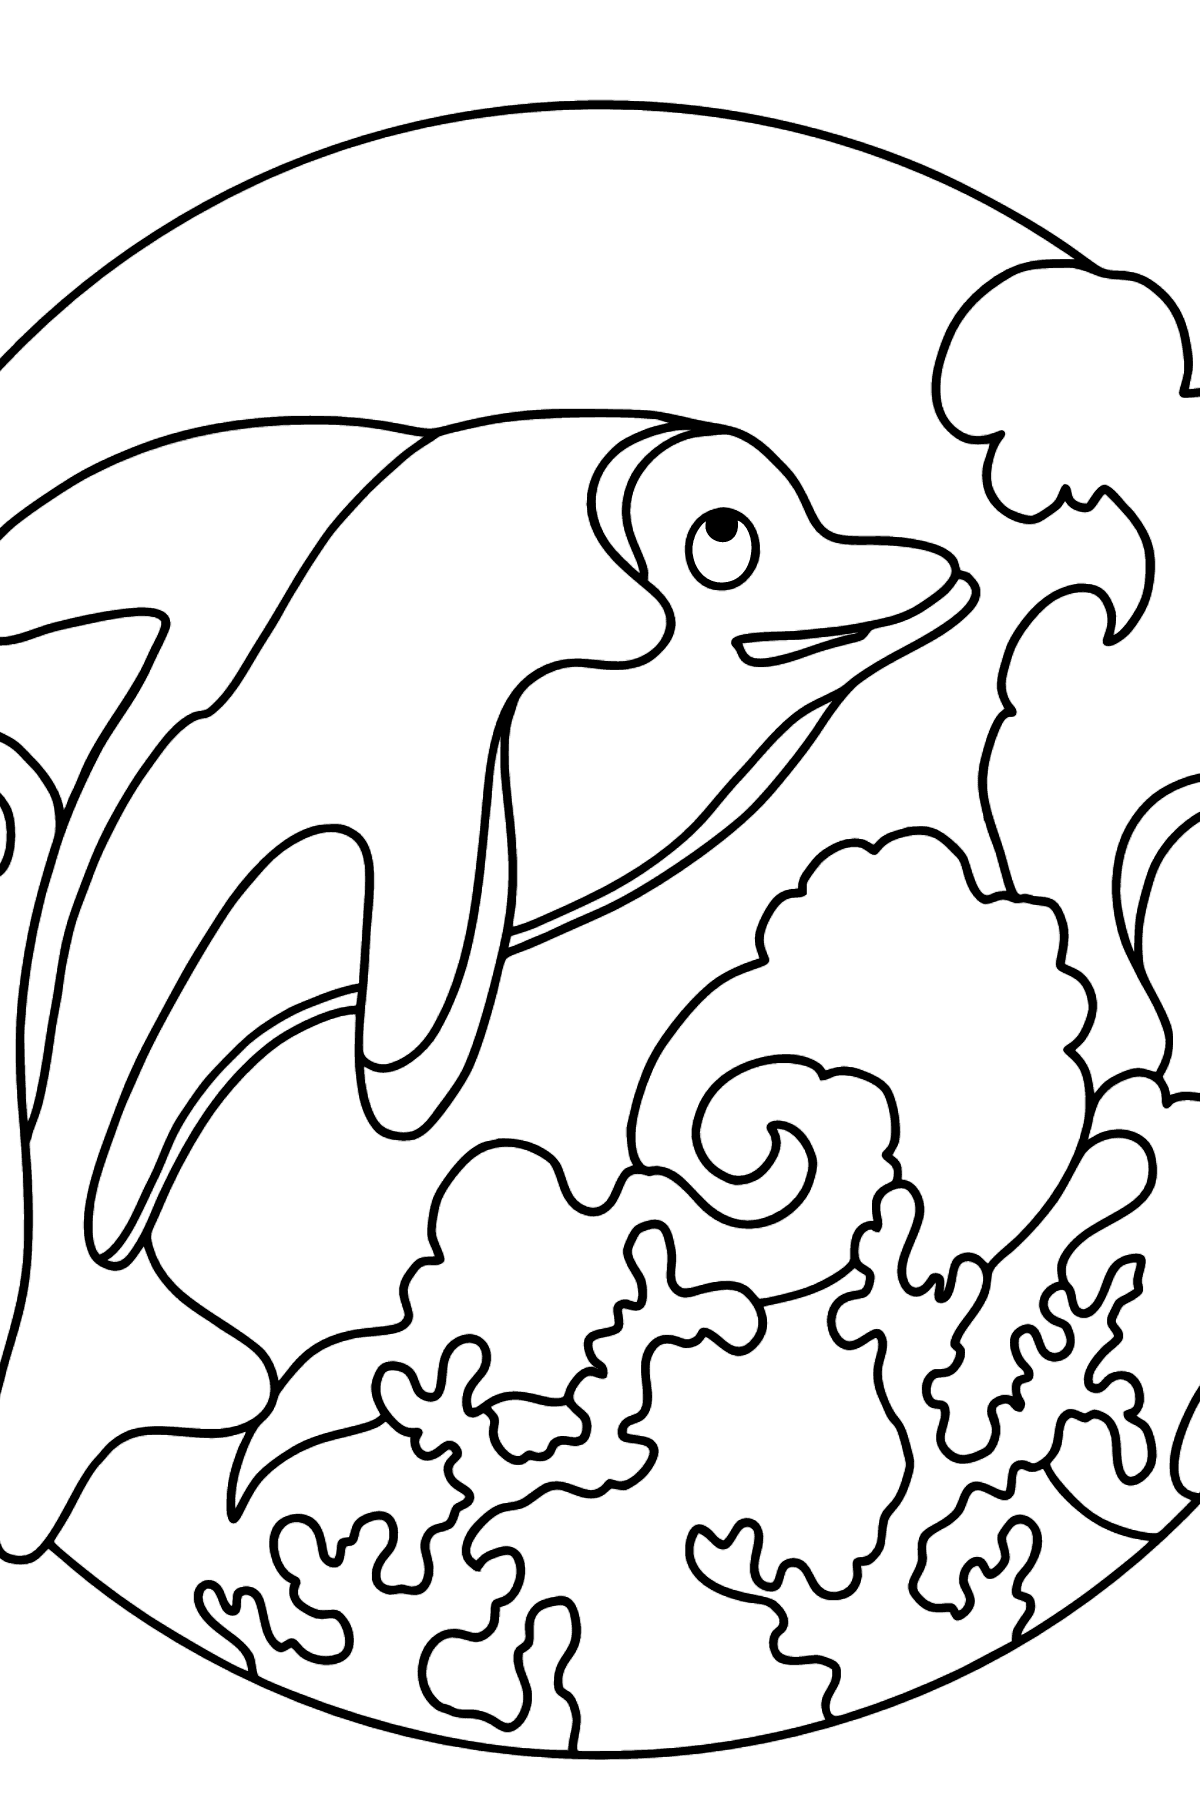 Coloriage - Un dauphin, un prédateur agile et rapide - Coloriages pour les Enfants